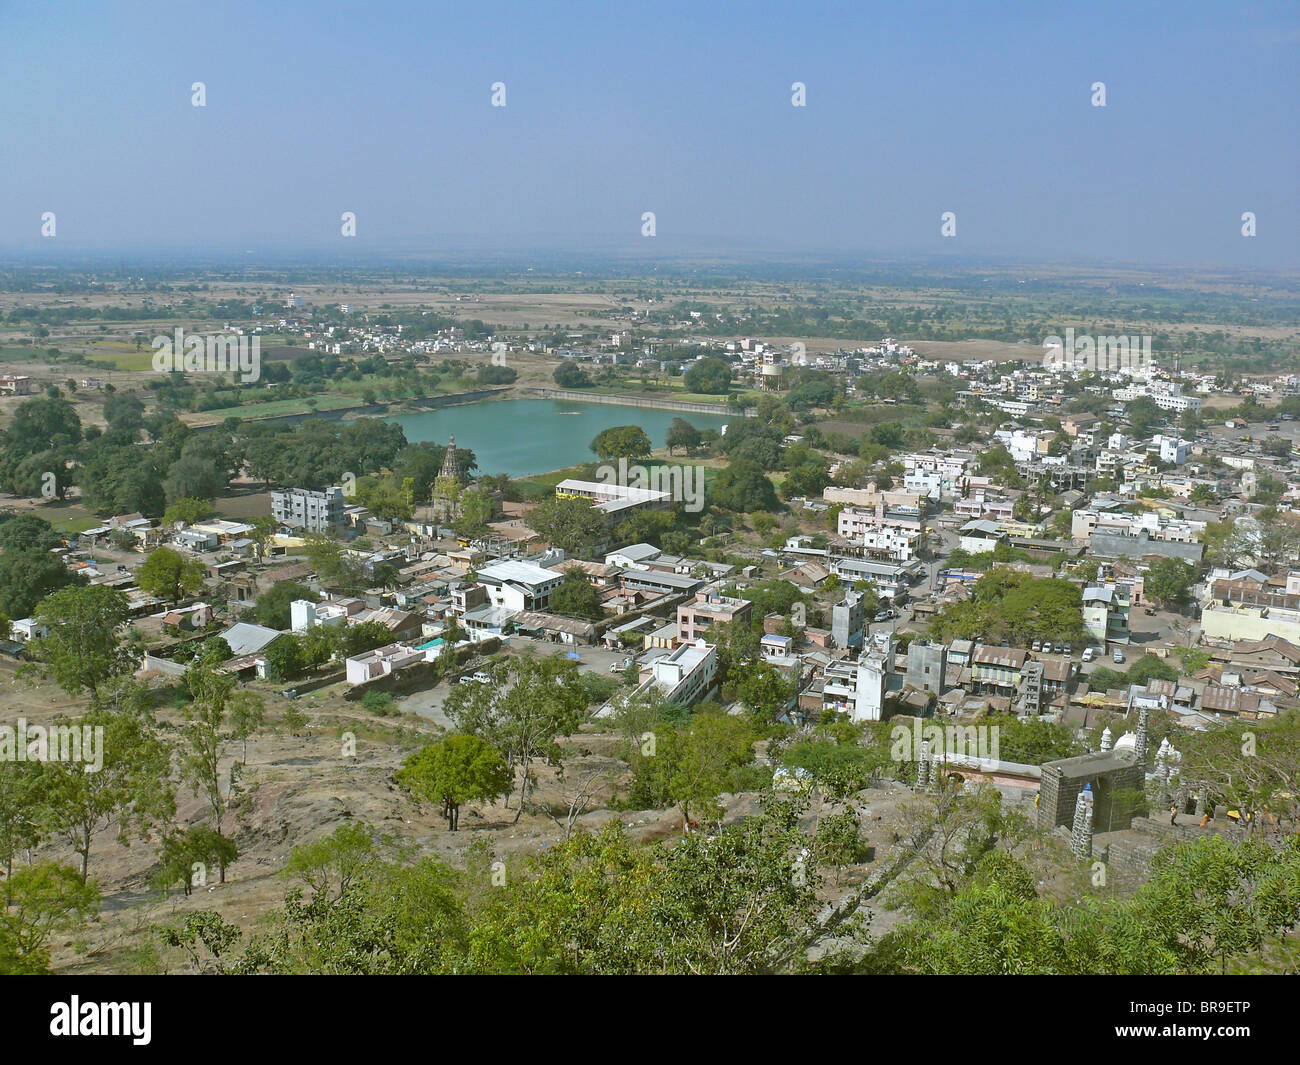 View of a developed area near Peshve and Ahilyadevi Holkar Talav in Jejuri city, Maharashtra, India Stock Photo